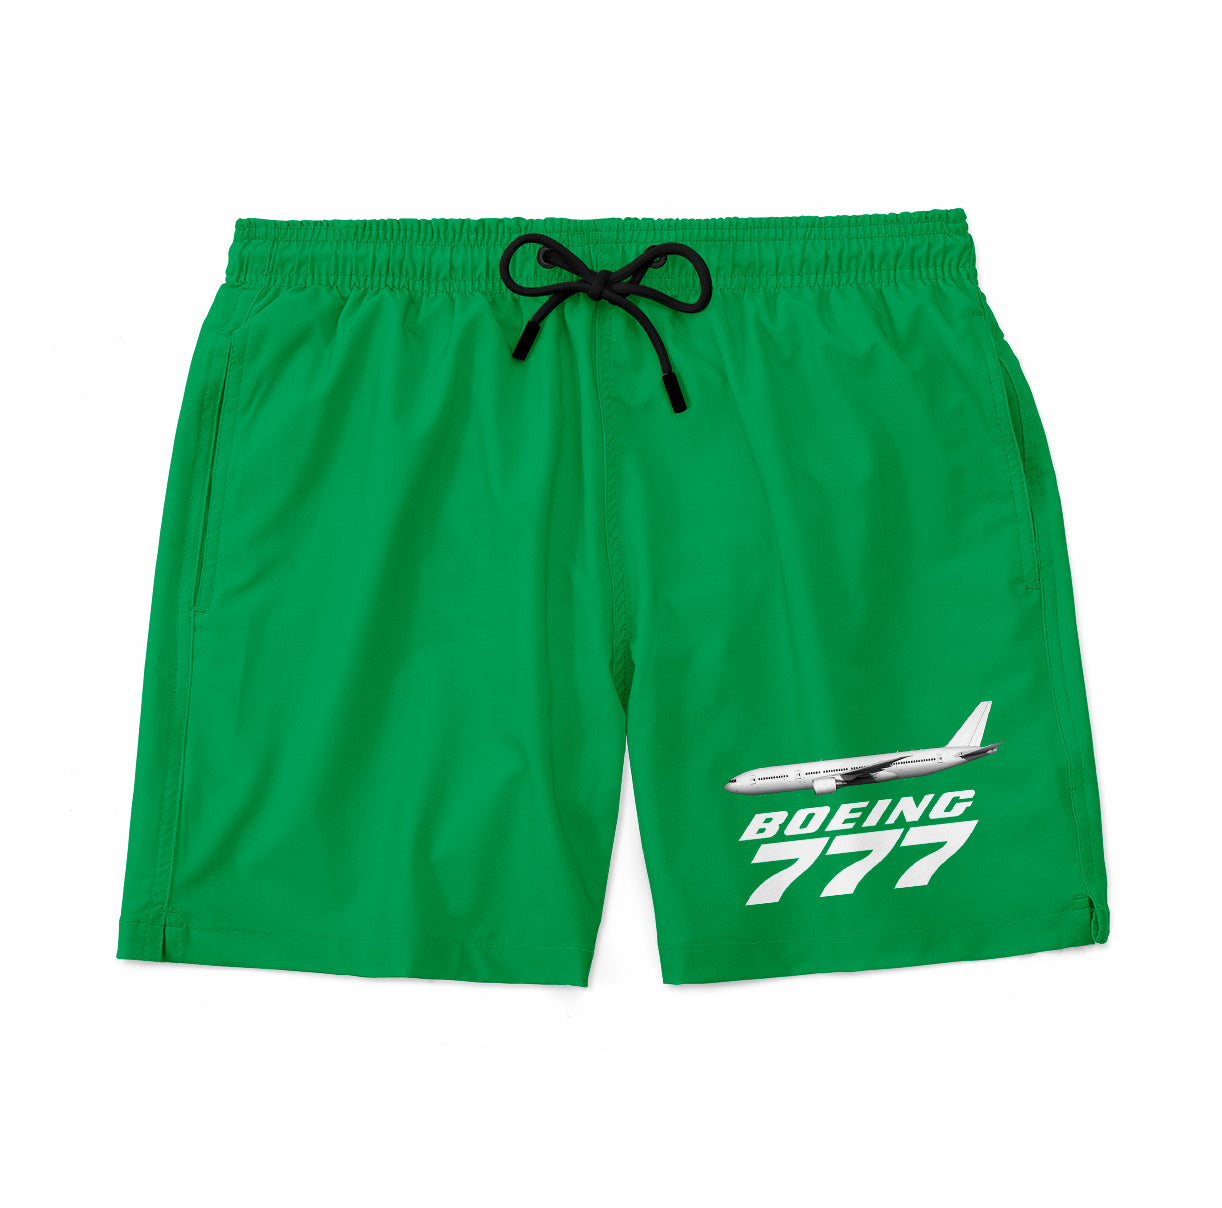 The Boeing 777 Designed Swim Trunks & Shorts